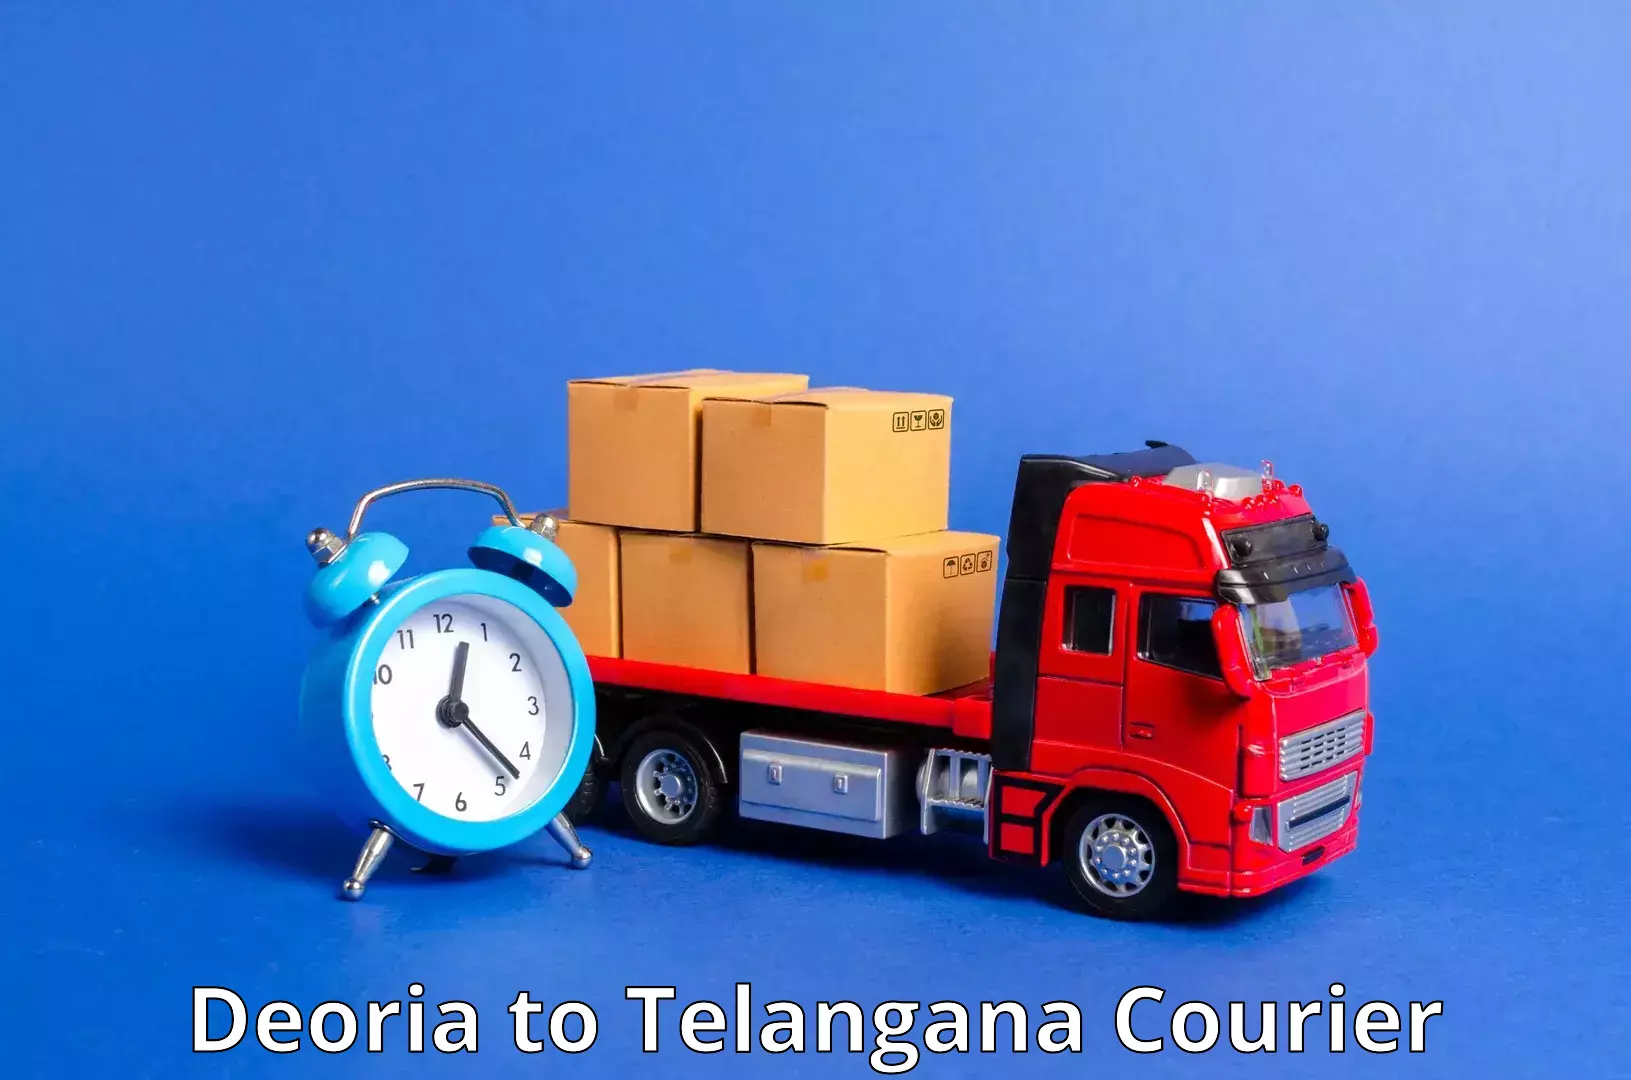 High-speed parcel service Deoria to Gudur Warangal